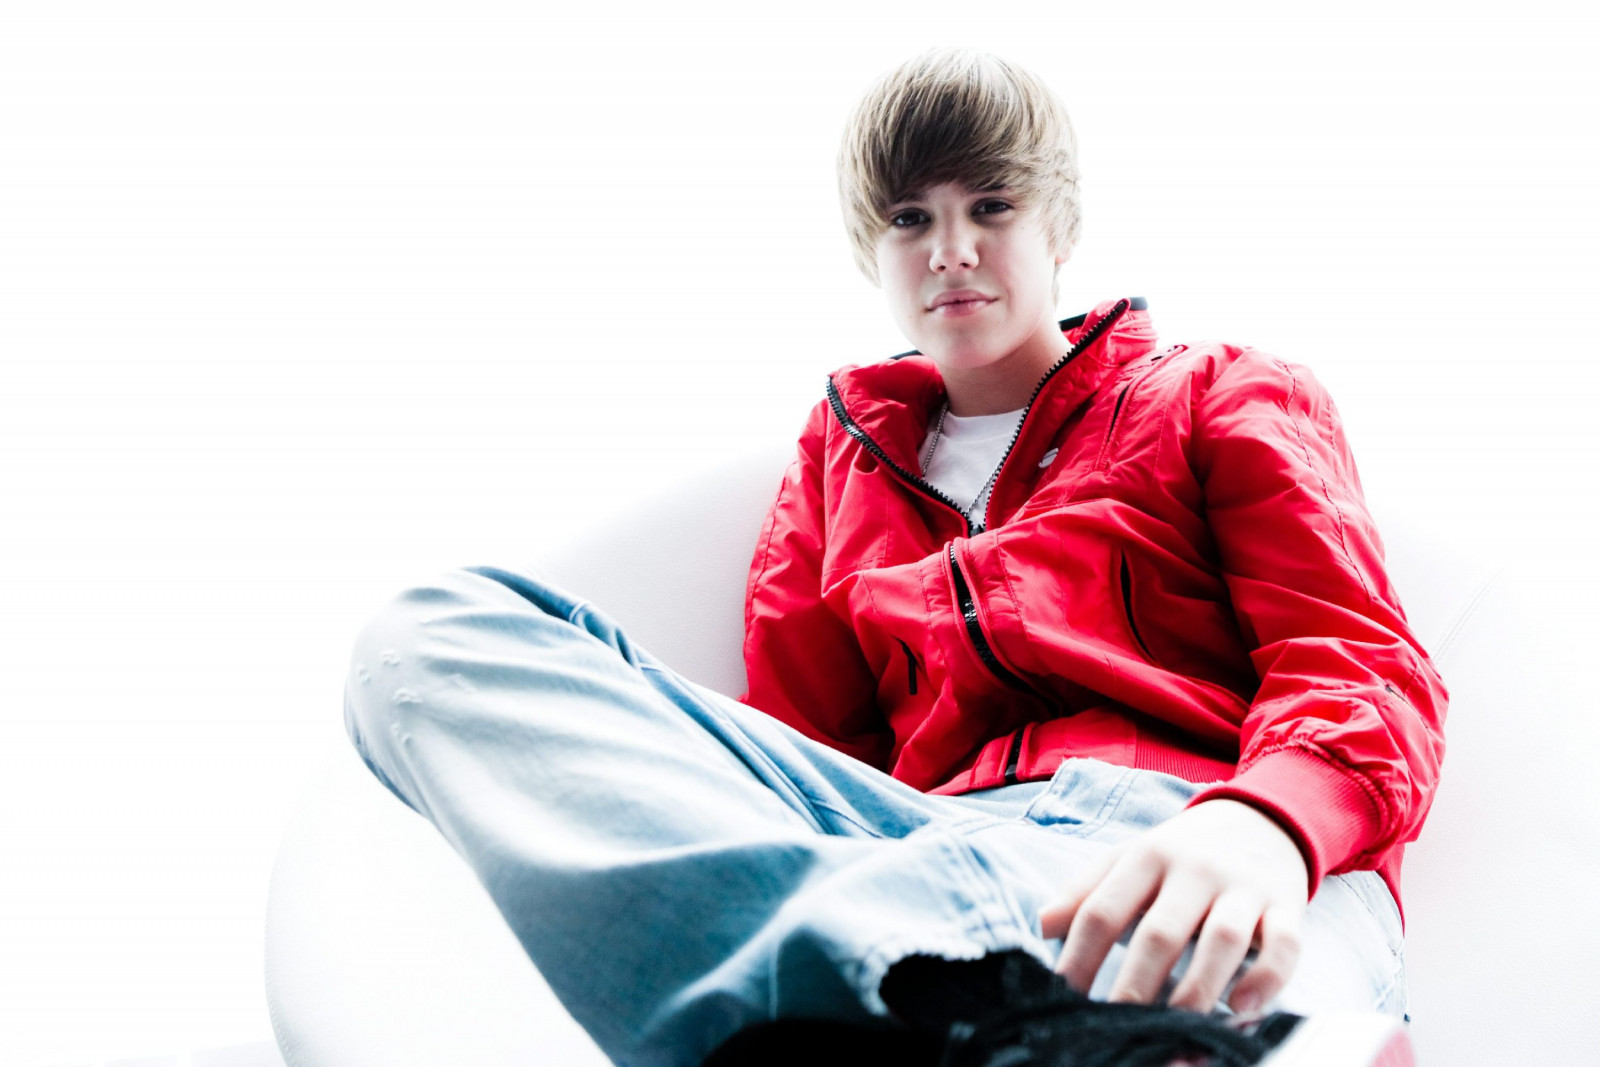 Джастин Бибер (Justin Bieber)